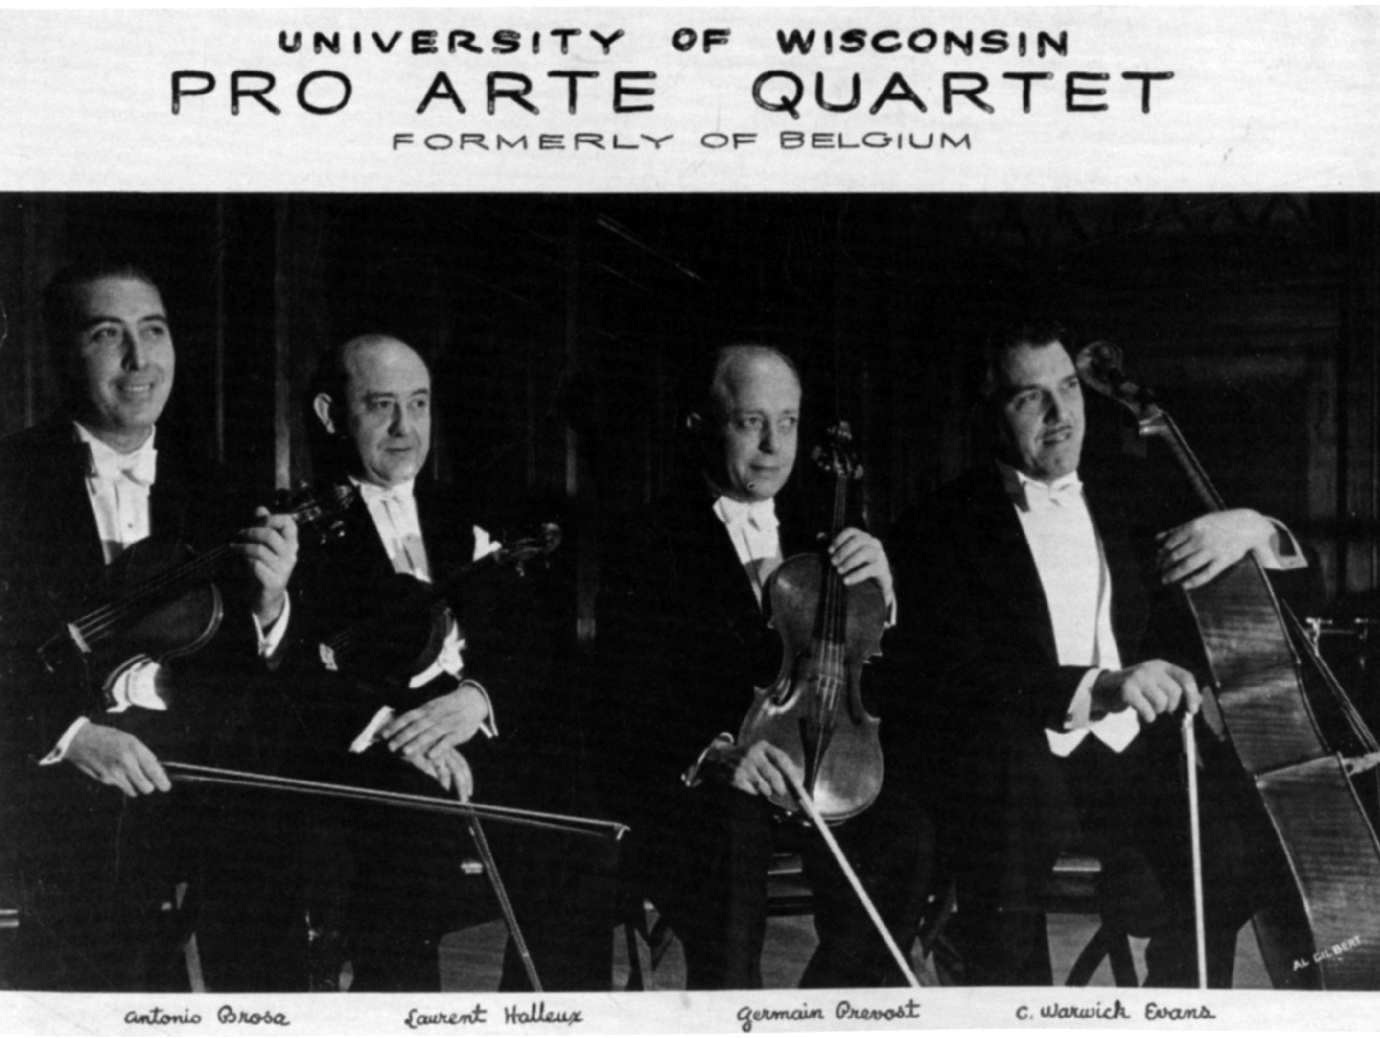 Pro Arte Quartet 1940 Brosa-Halleux-Prevost-Evans 1940